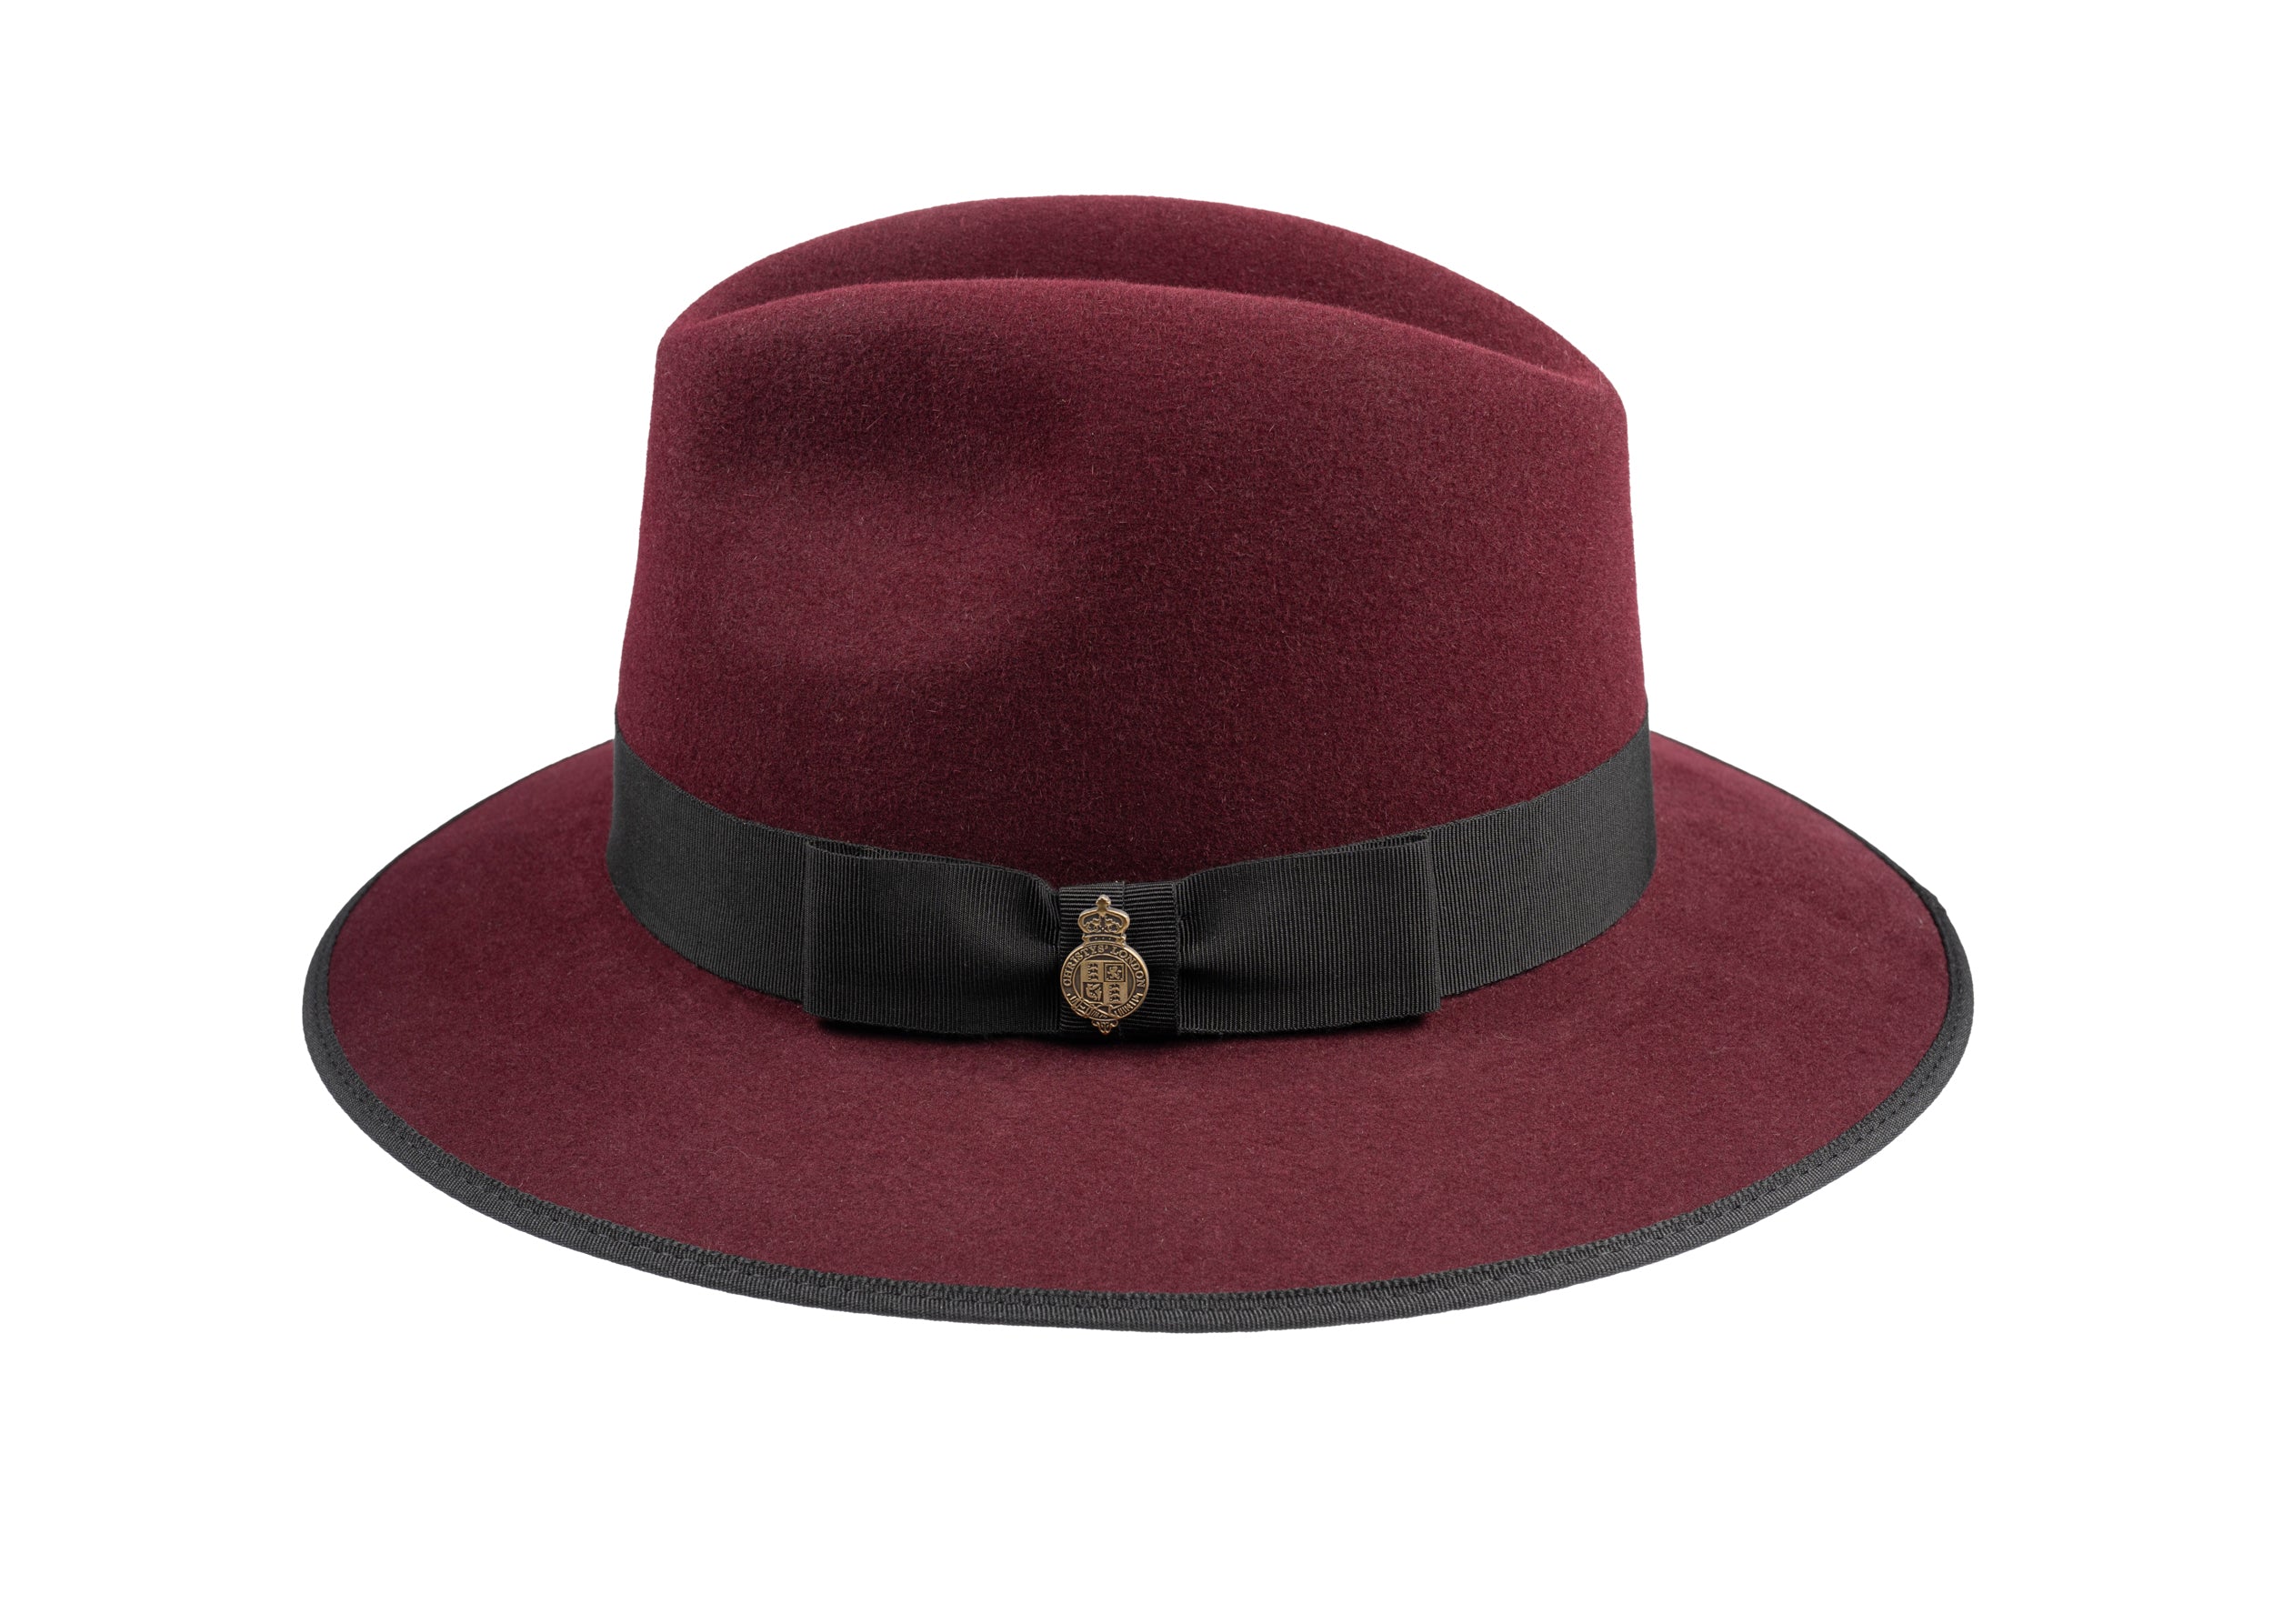 County Down Brim Fur Felt Trilby Hat